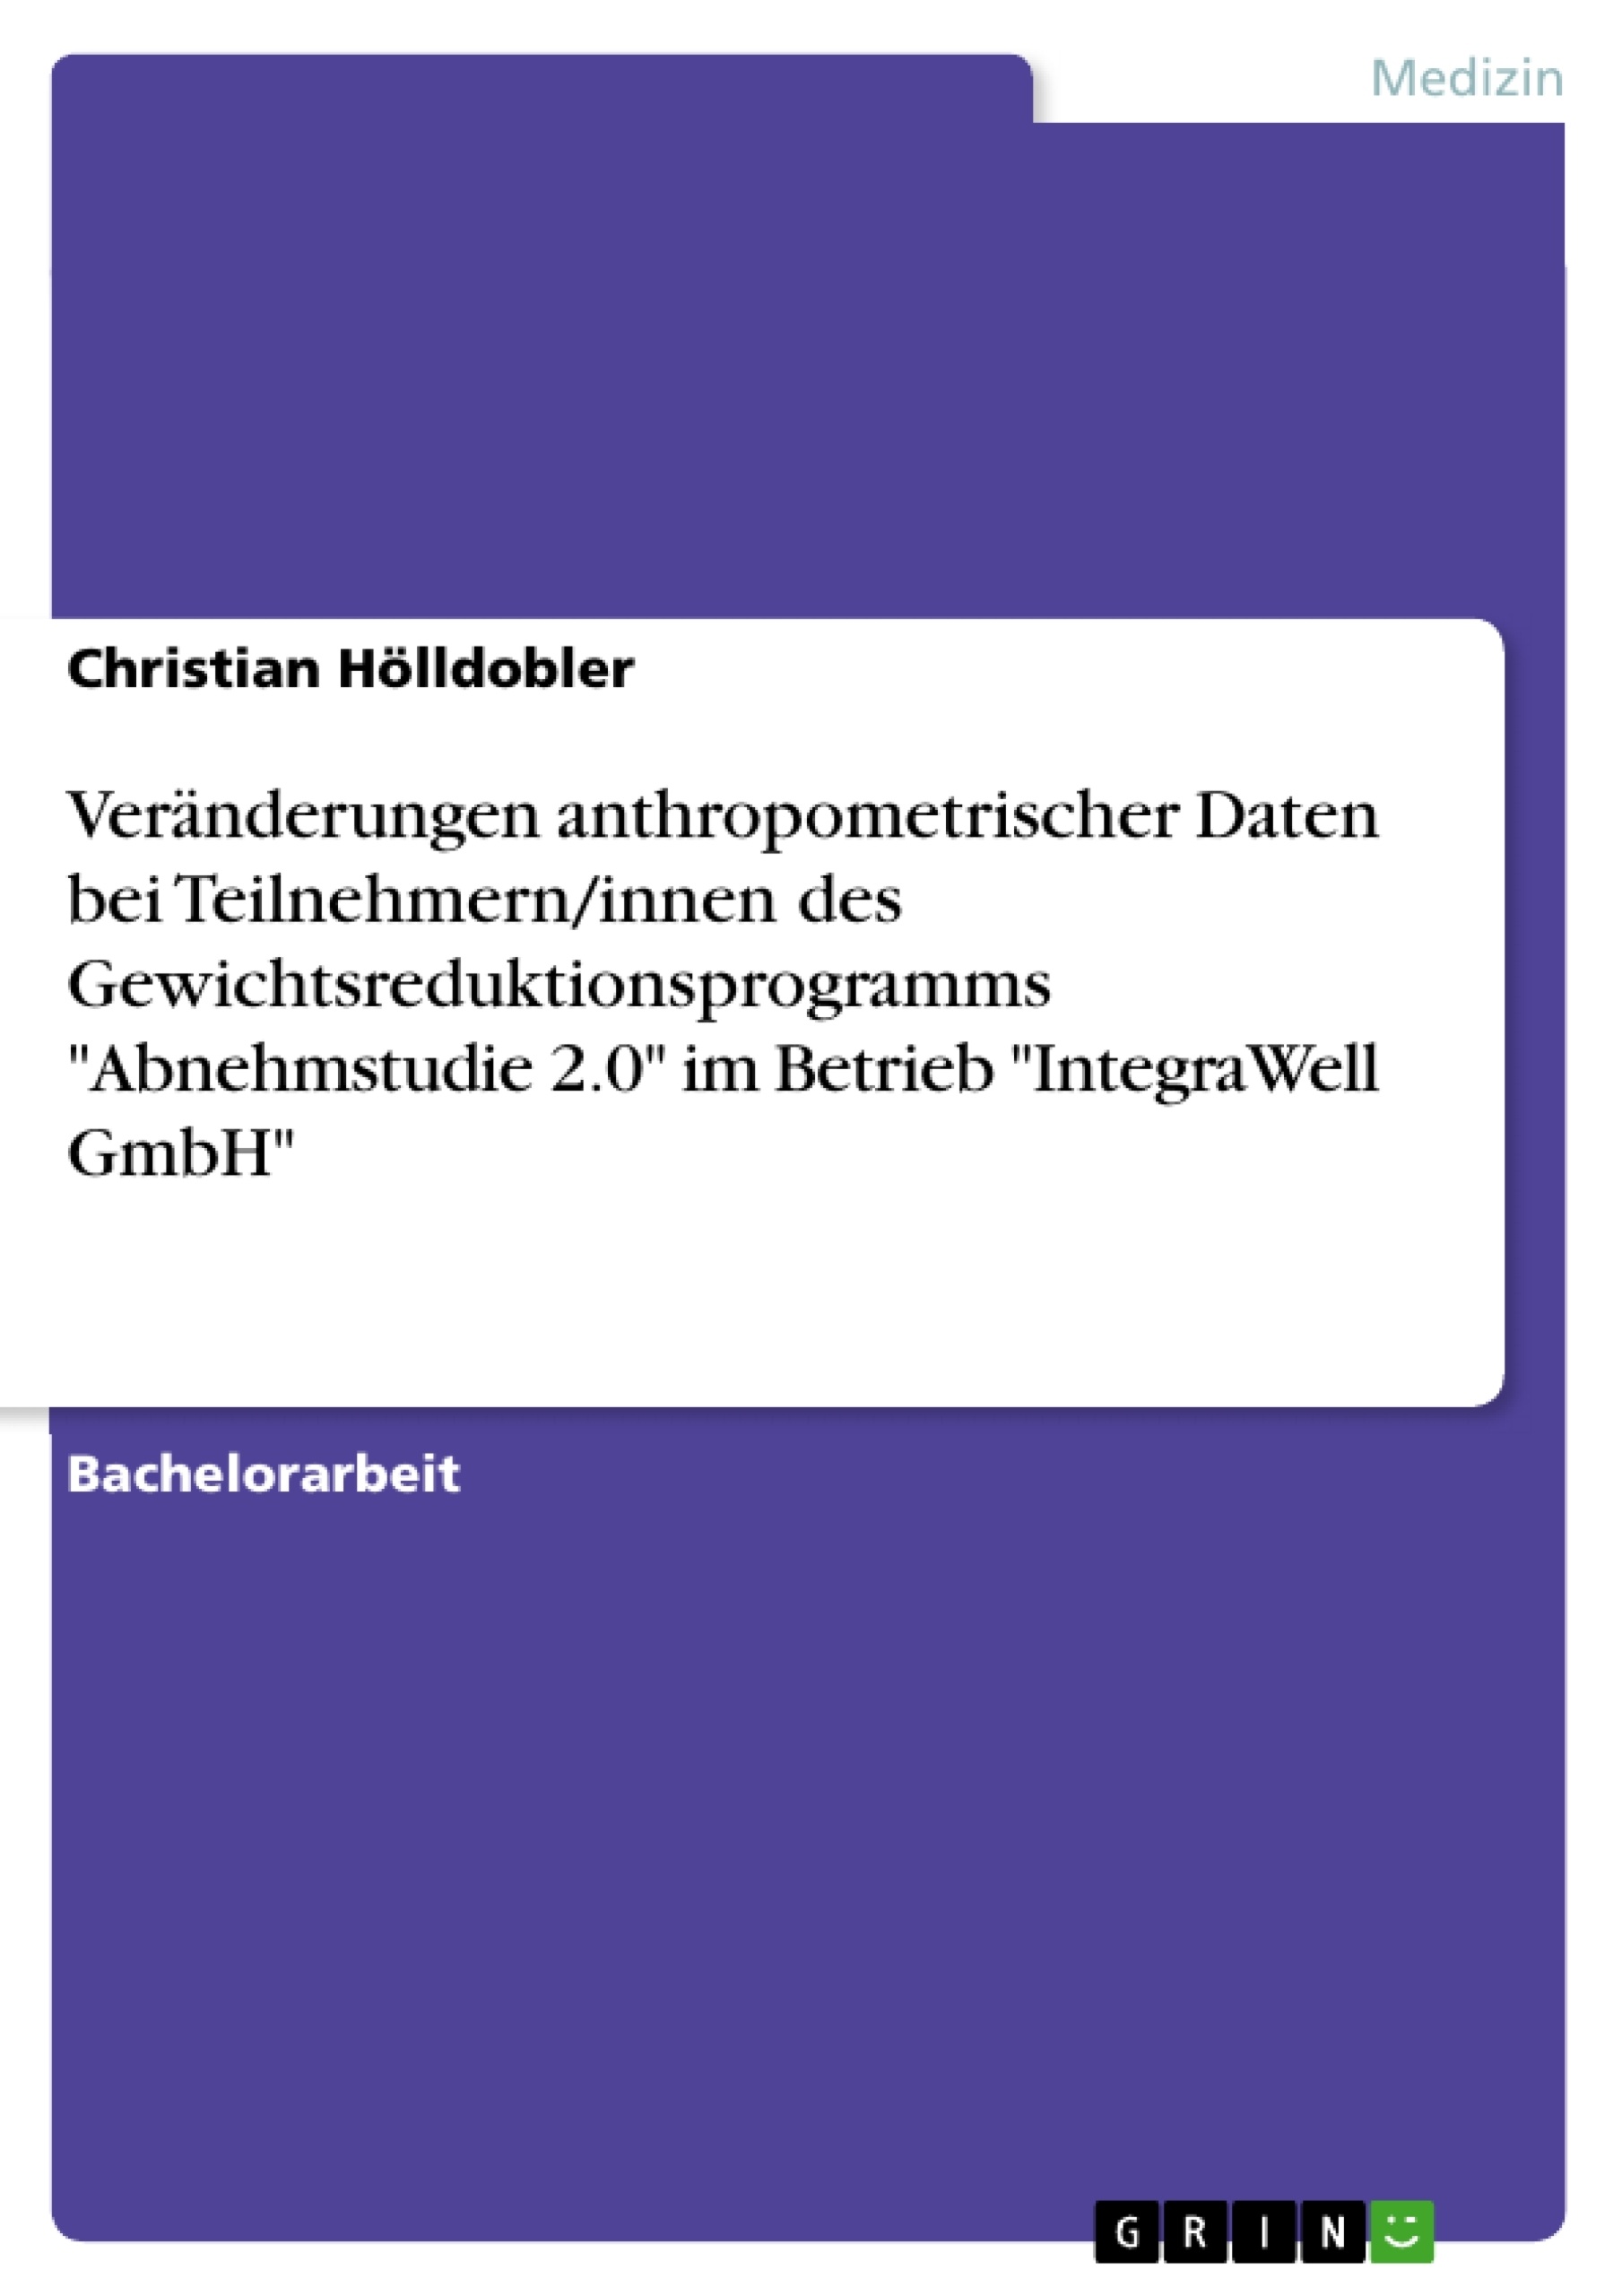 Title: Veränderungen anthropometrischer Daten bei Teilnehmern/innen des Gewichtsreduktionsprogramms "Abnehmstudie 2.0" im Betrieb "IntegraWell GmbH"